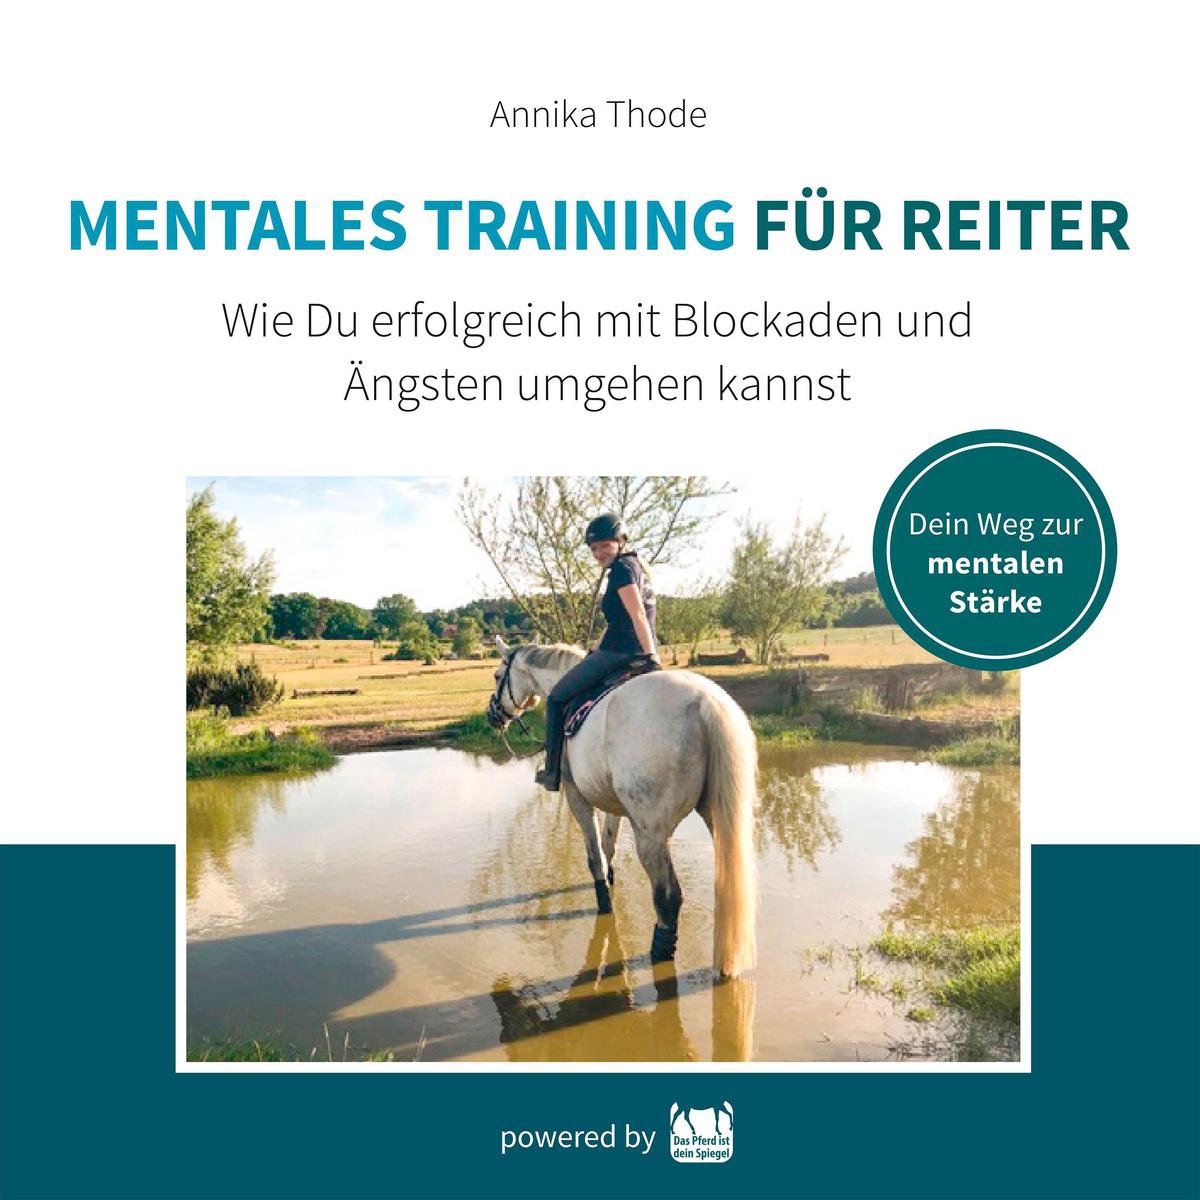 Mentales Training für Reiter - Annika Thode